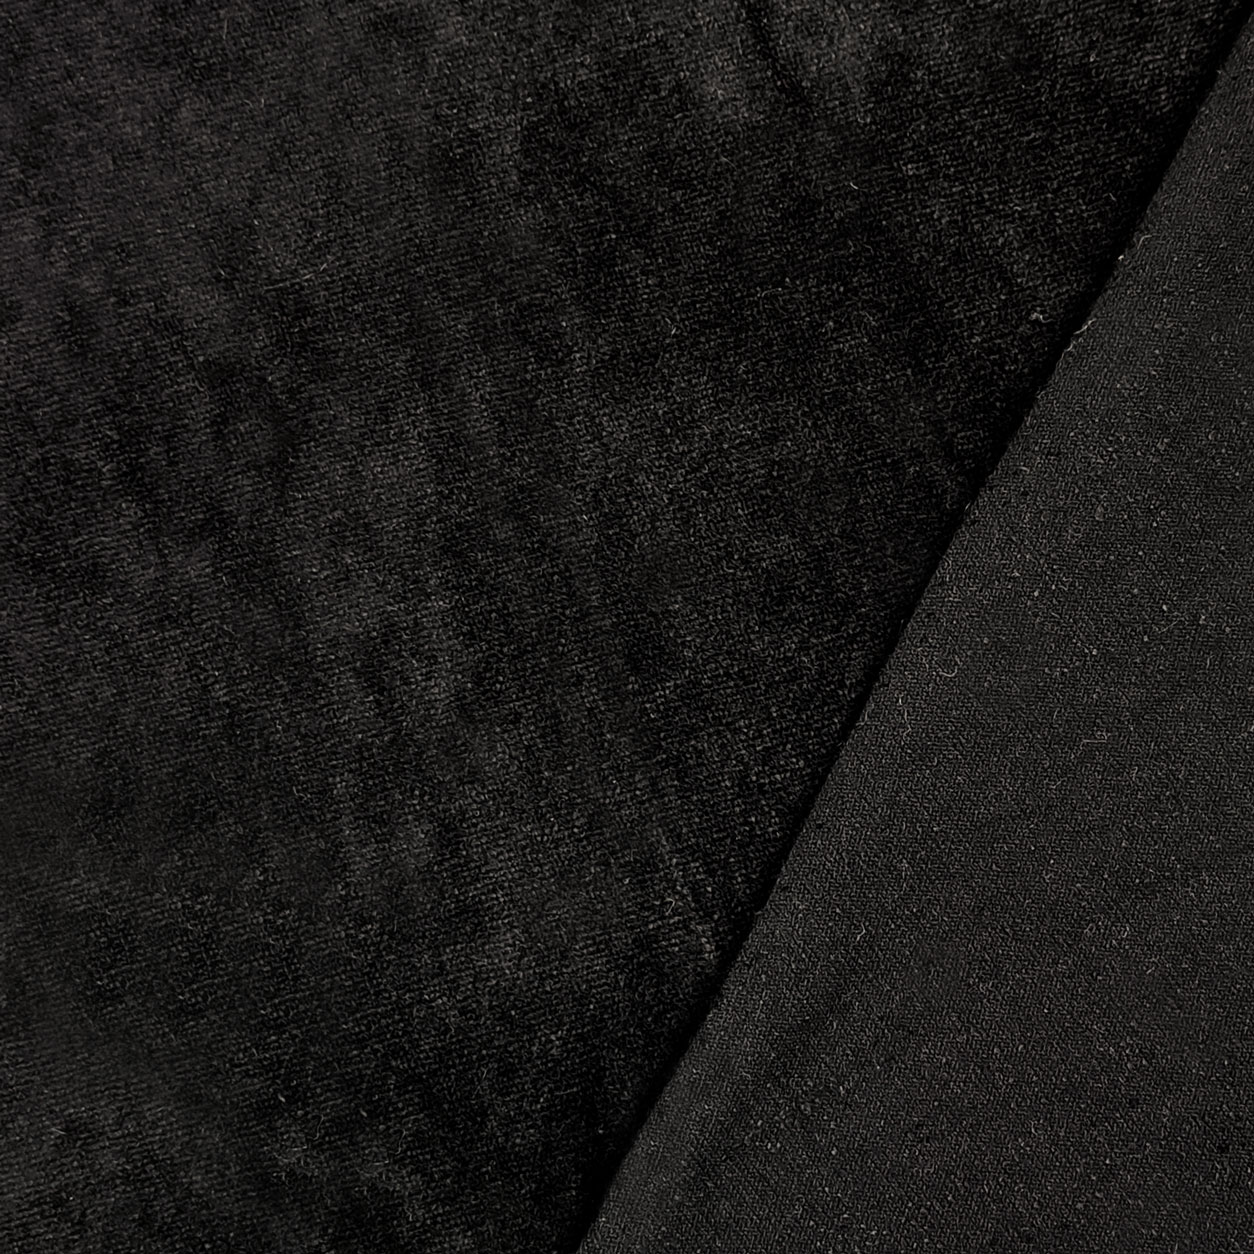 Tessuto maglina per abbigliamento ciniglia nero